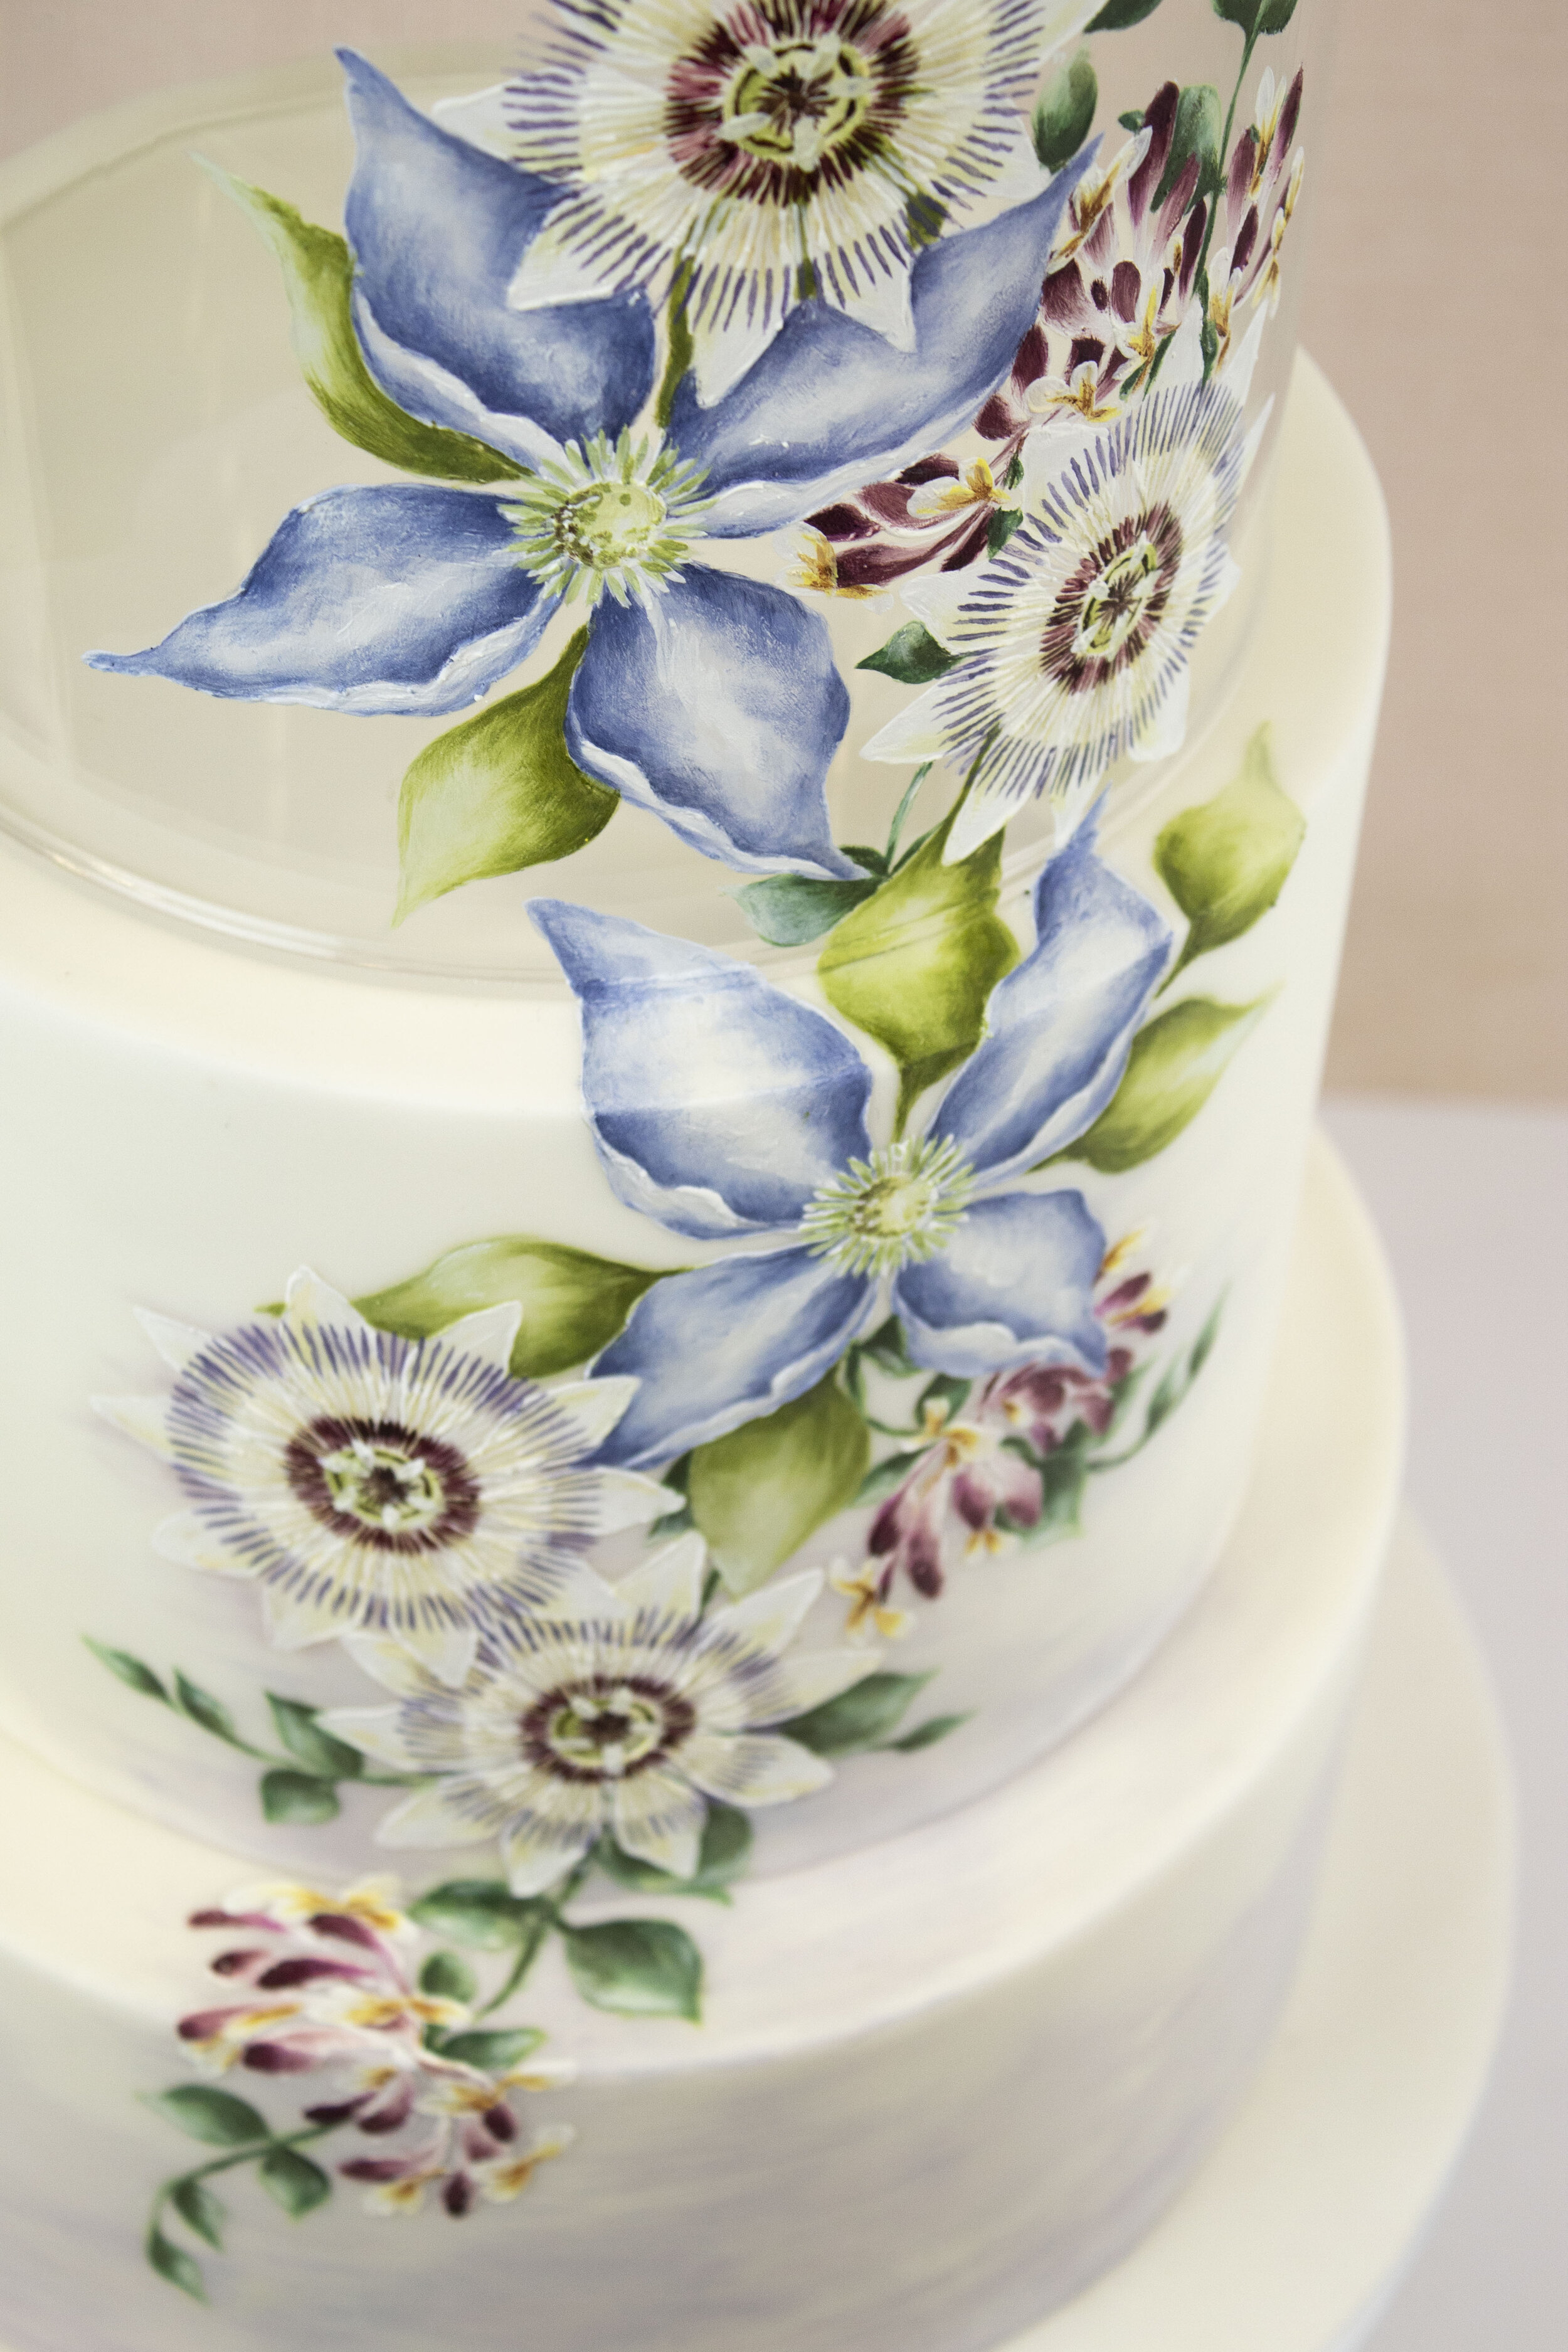 cake cake ideas hand paint wedding cake and birthday cake image  inspiration on Designspiration